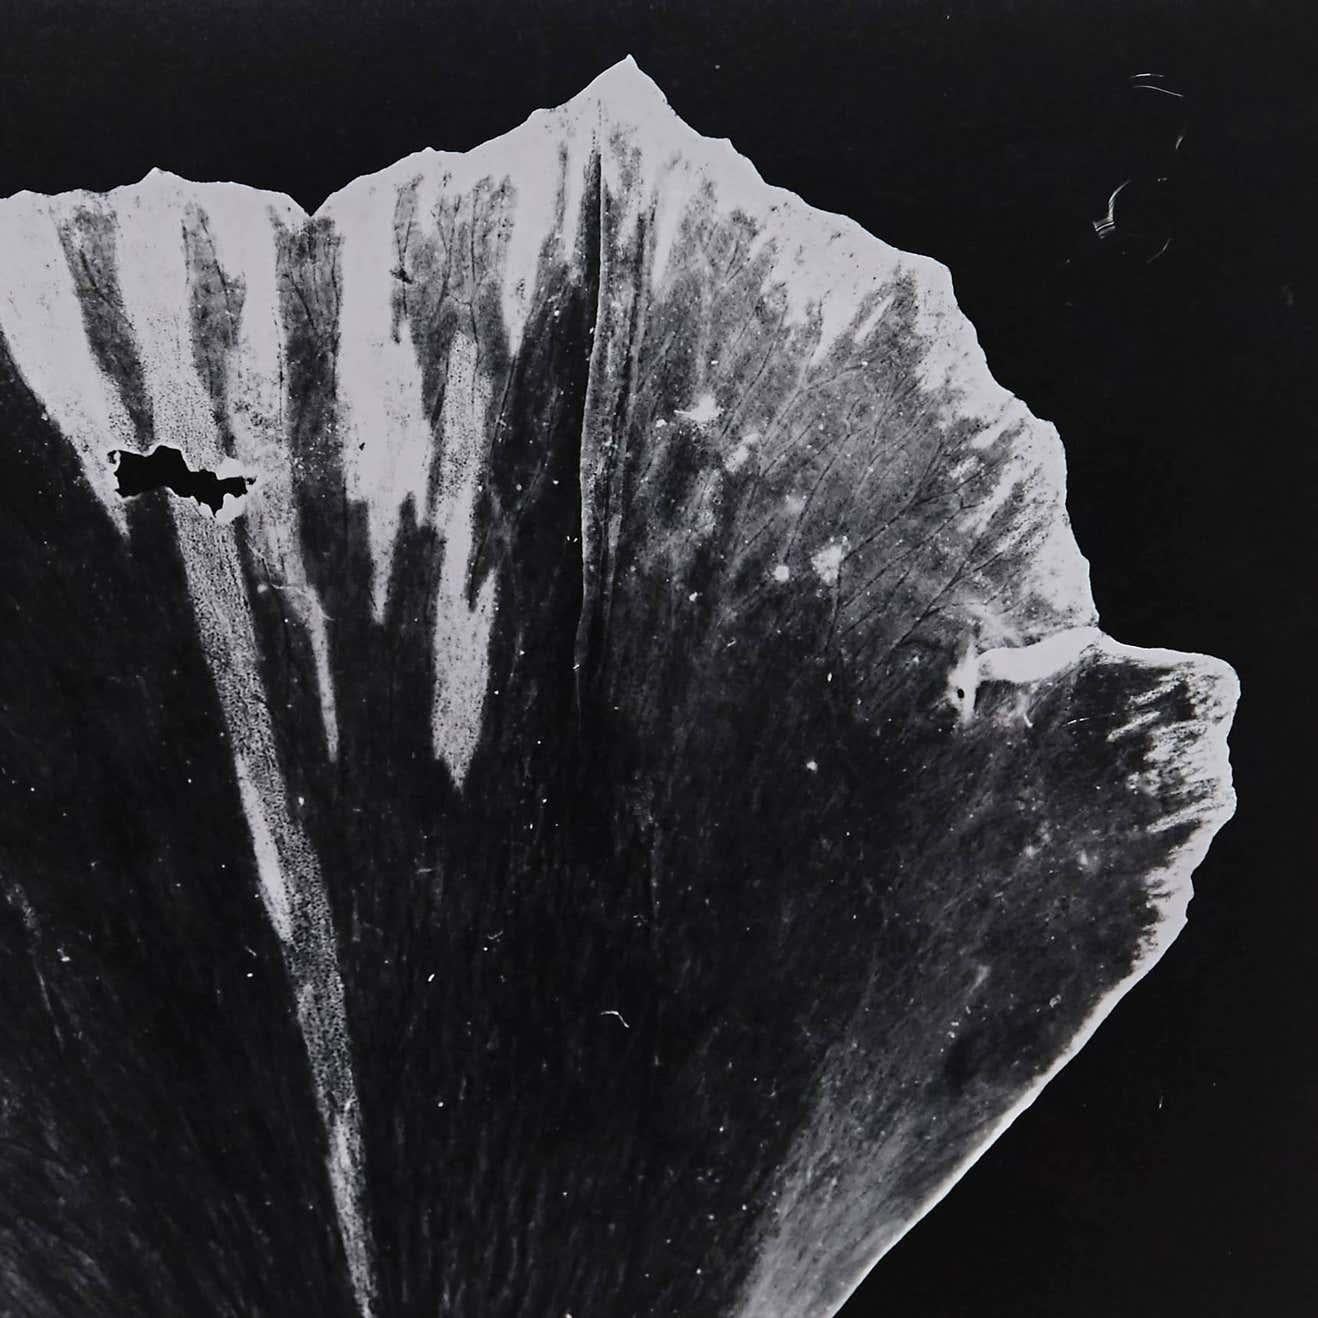 Fotogramm von Enrico Garzaro aus der Flora-Serie, 2015.
Gelatine Siver Kopie.
Handsigniert auf der Rückseite.
Einzigartiger Druck.